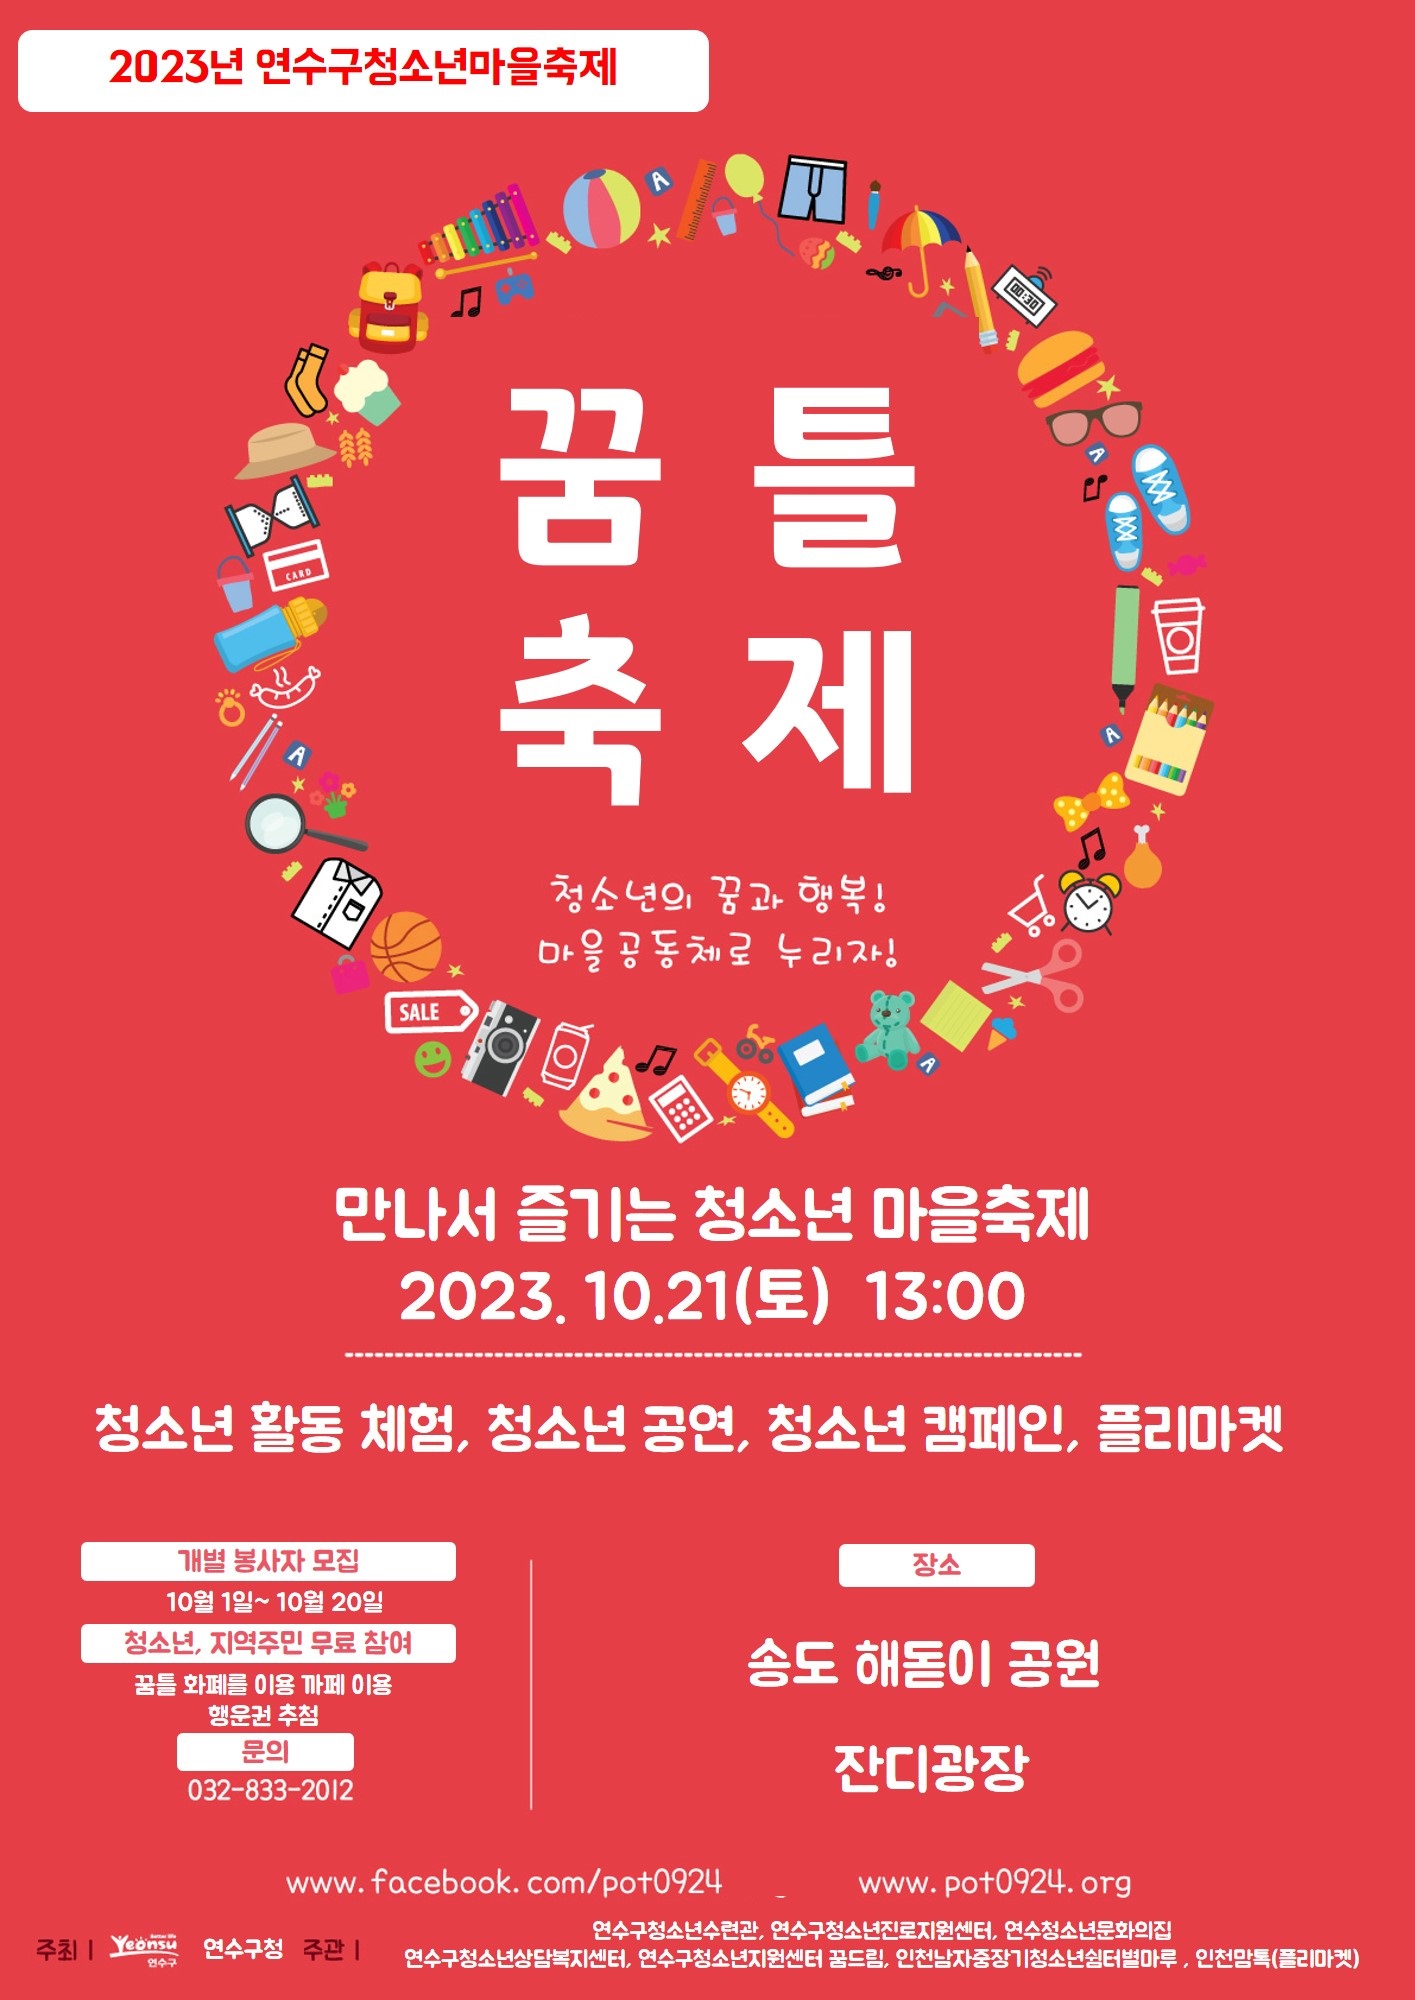 2023년 연수구청소년마을축제 「꿈틀 축제」 개최 안내의 1번째 이미지